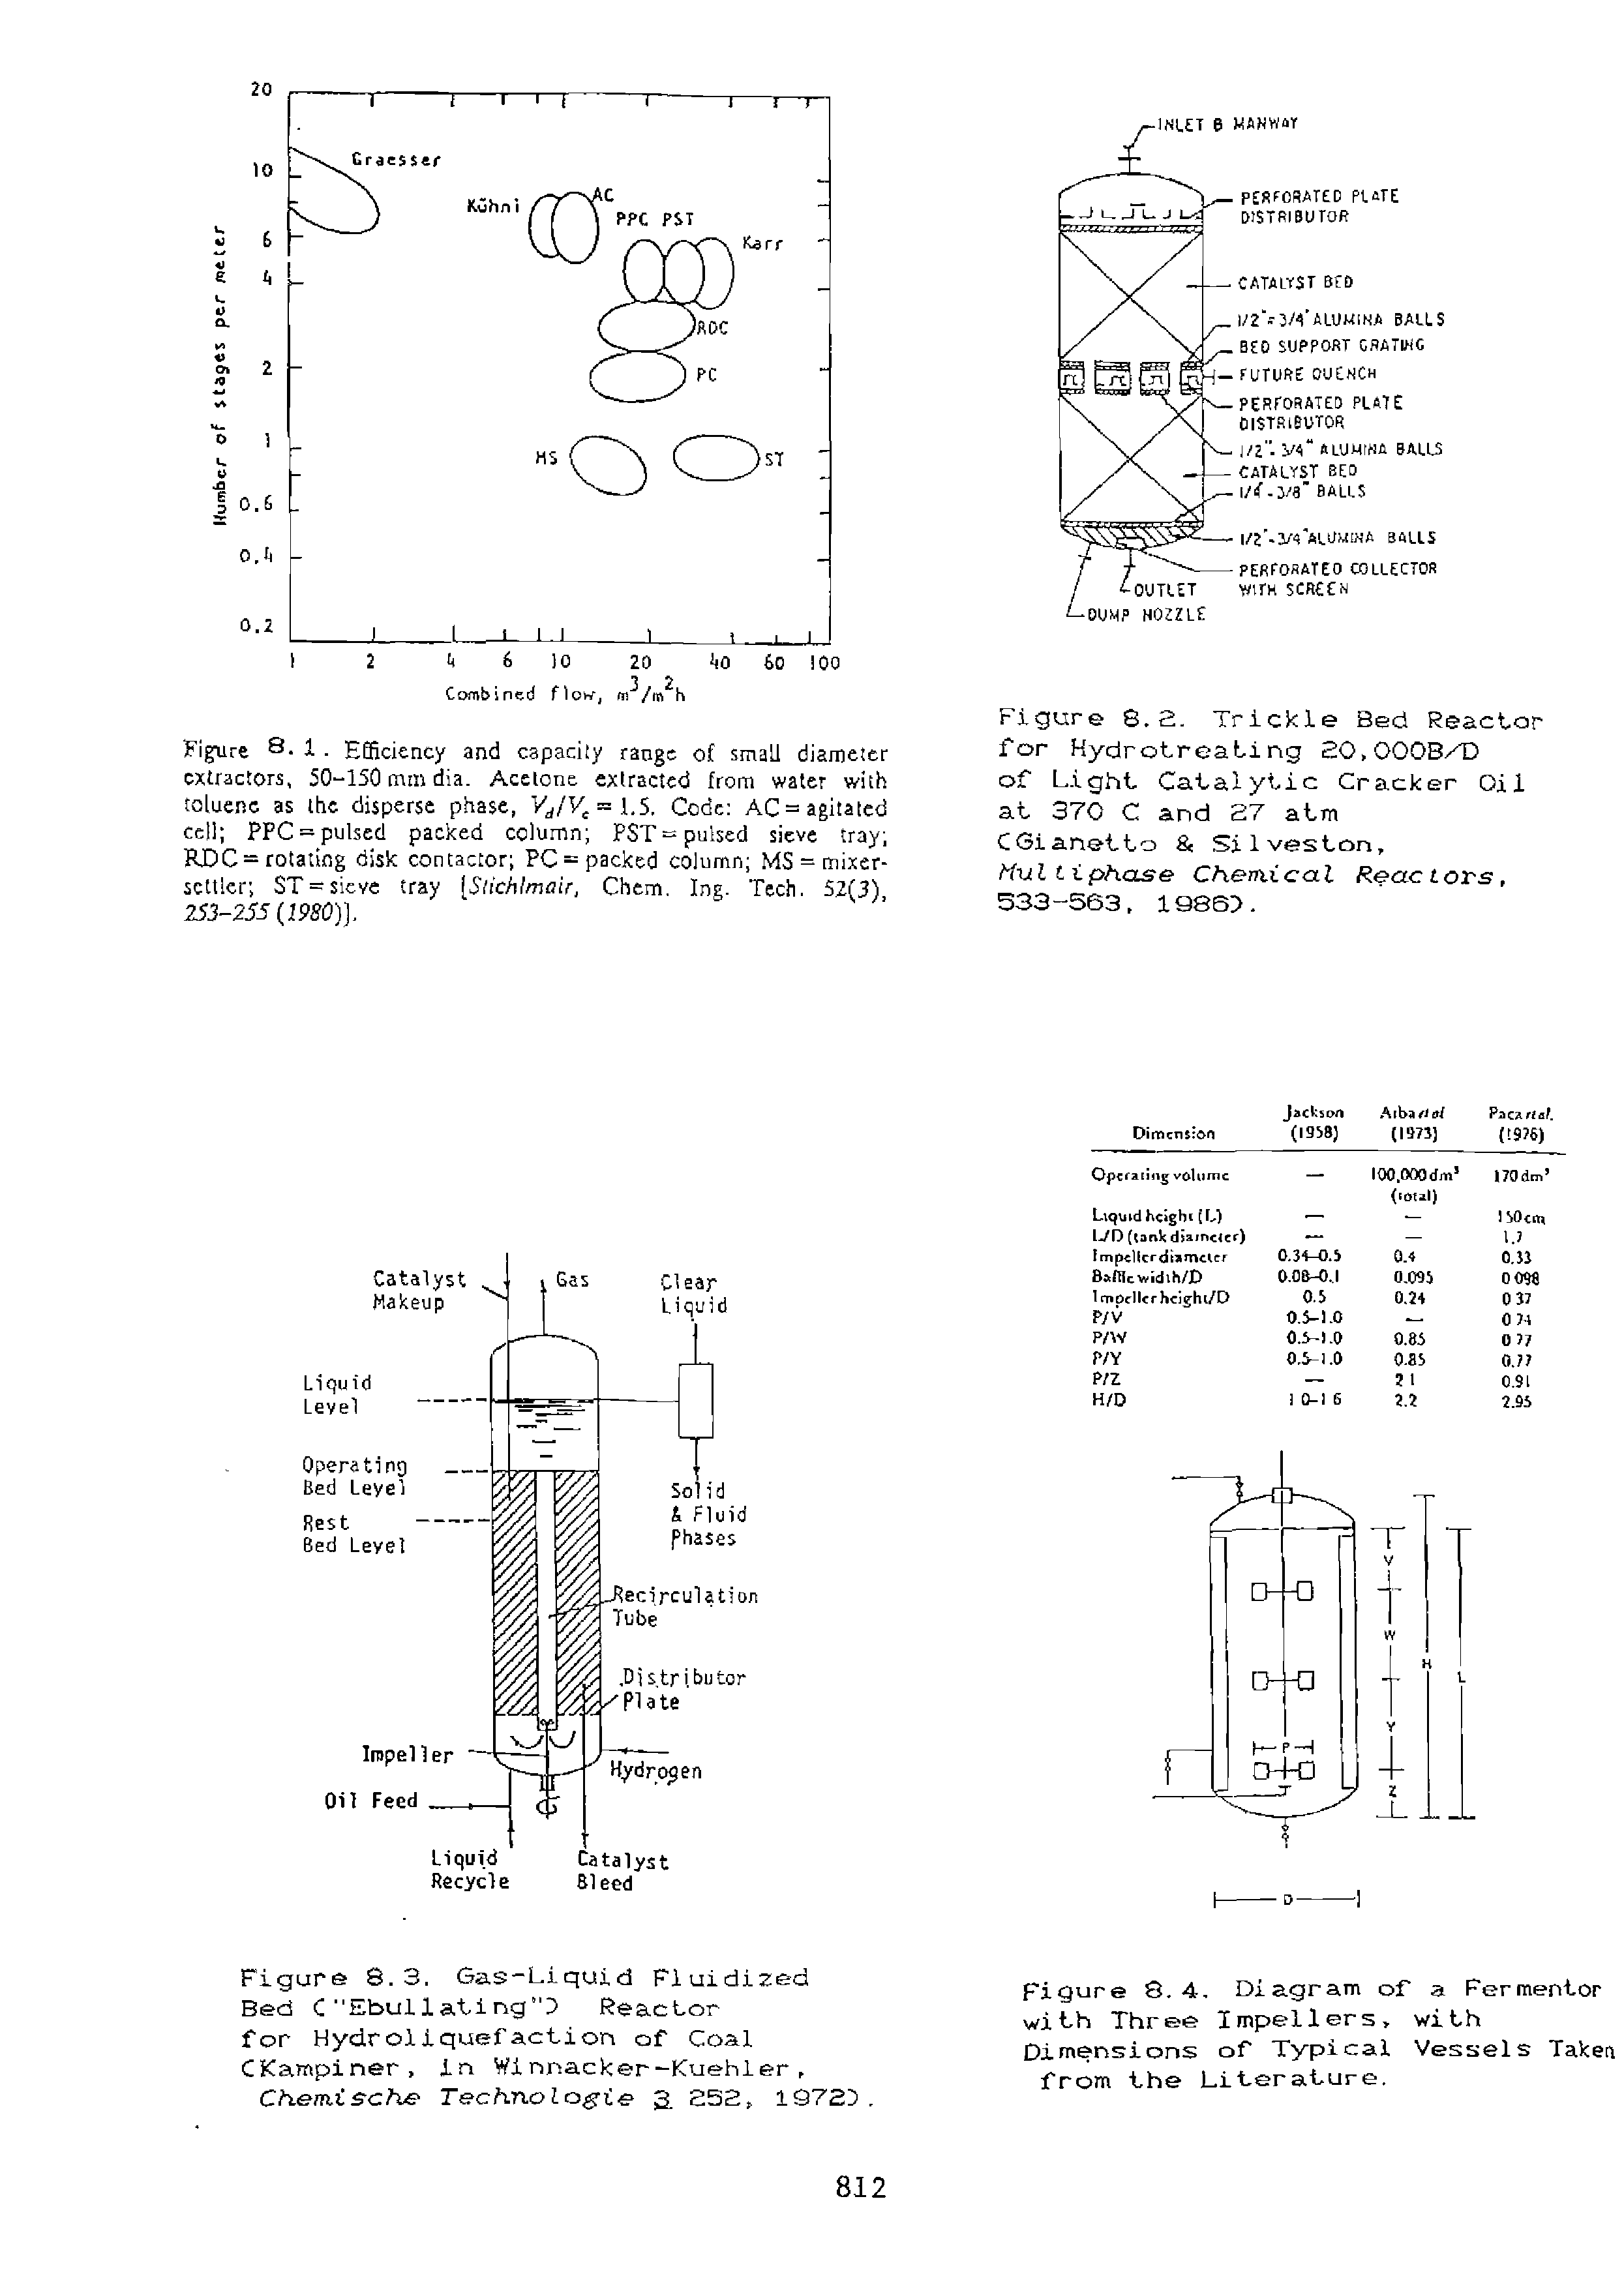 Figure 8.3. Gas-Liquid Fluidized Bed C"Ebullating" Reactor for Hydroliquefaction of Coal CKampiner, in Winnacker-Kuehler, Chemische Technolagie 52, 19723. ...